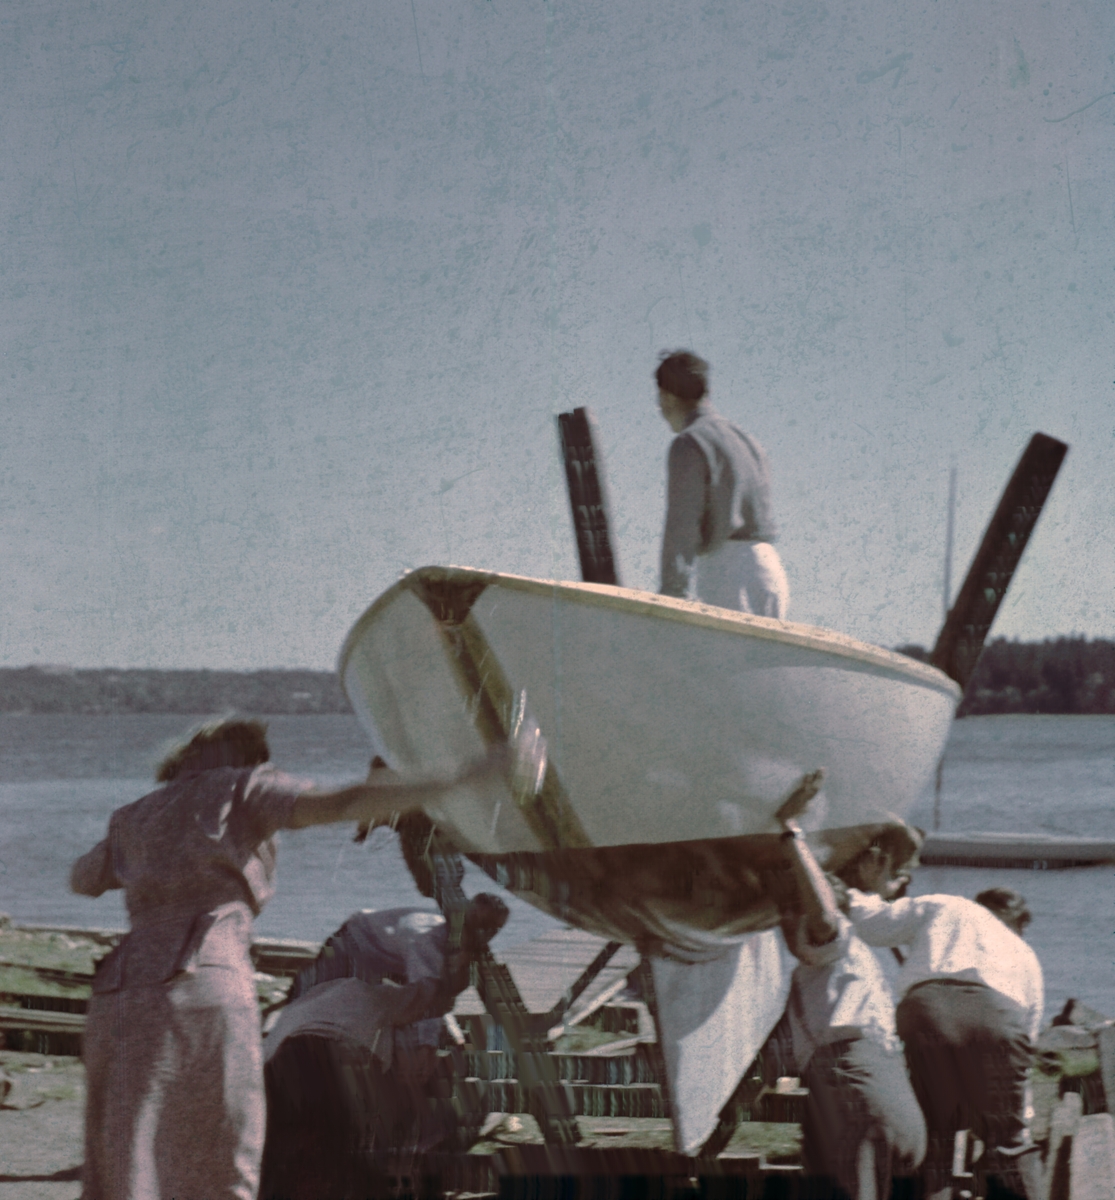 Första sjösättningen av segelbåten DECIBEL vid Skärsätra båtklubb, Lidingö. I båten ägaren Holger Marcus, längst t v troligen hustrun Aina.